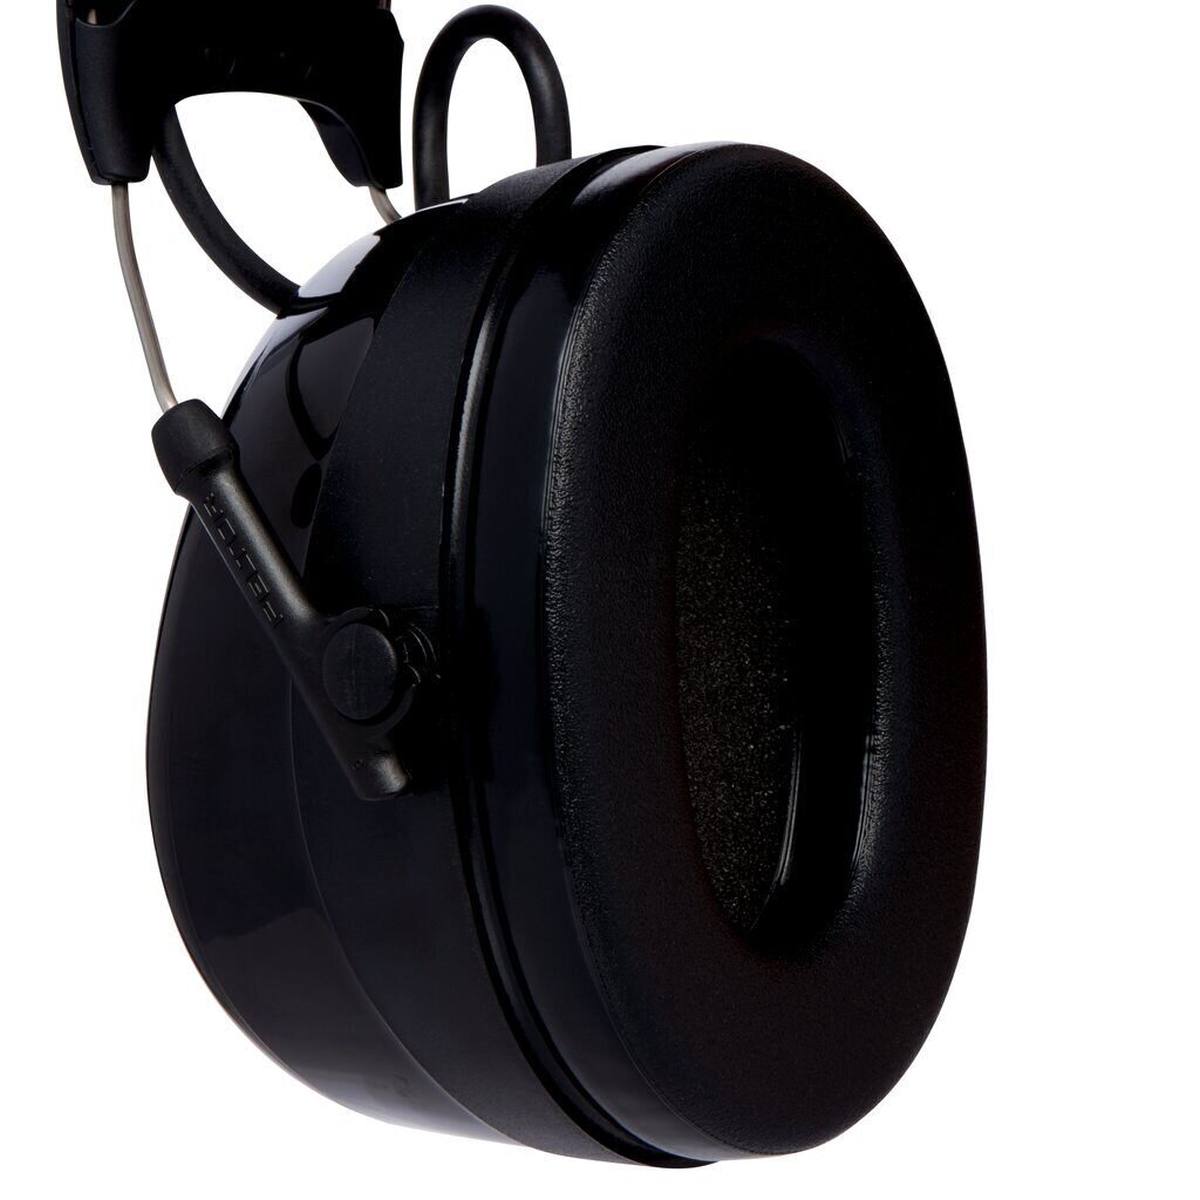  3M PELTOR ProTac III kuulonsuojaimet, musta, pääpanta, SNR=32 dB, musta